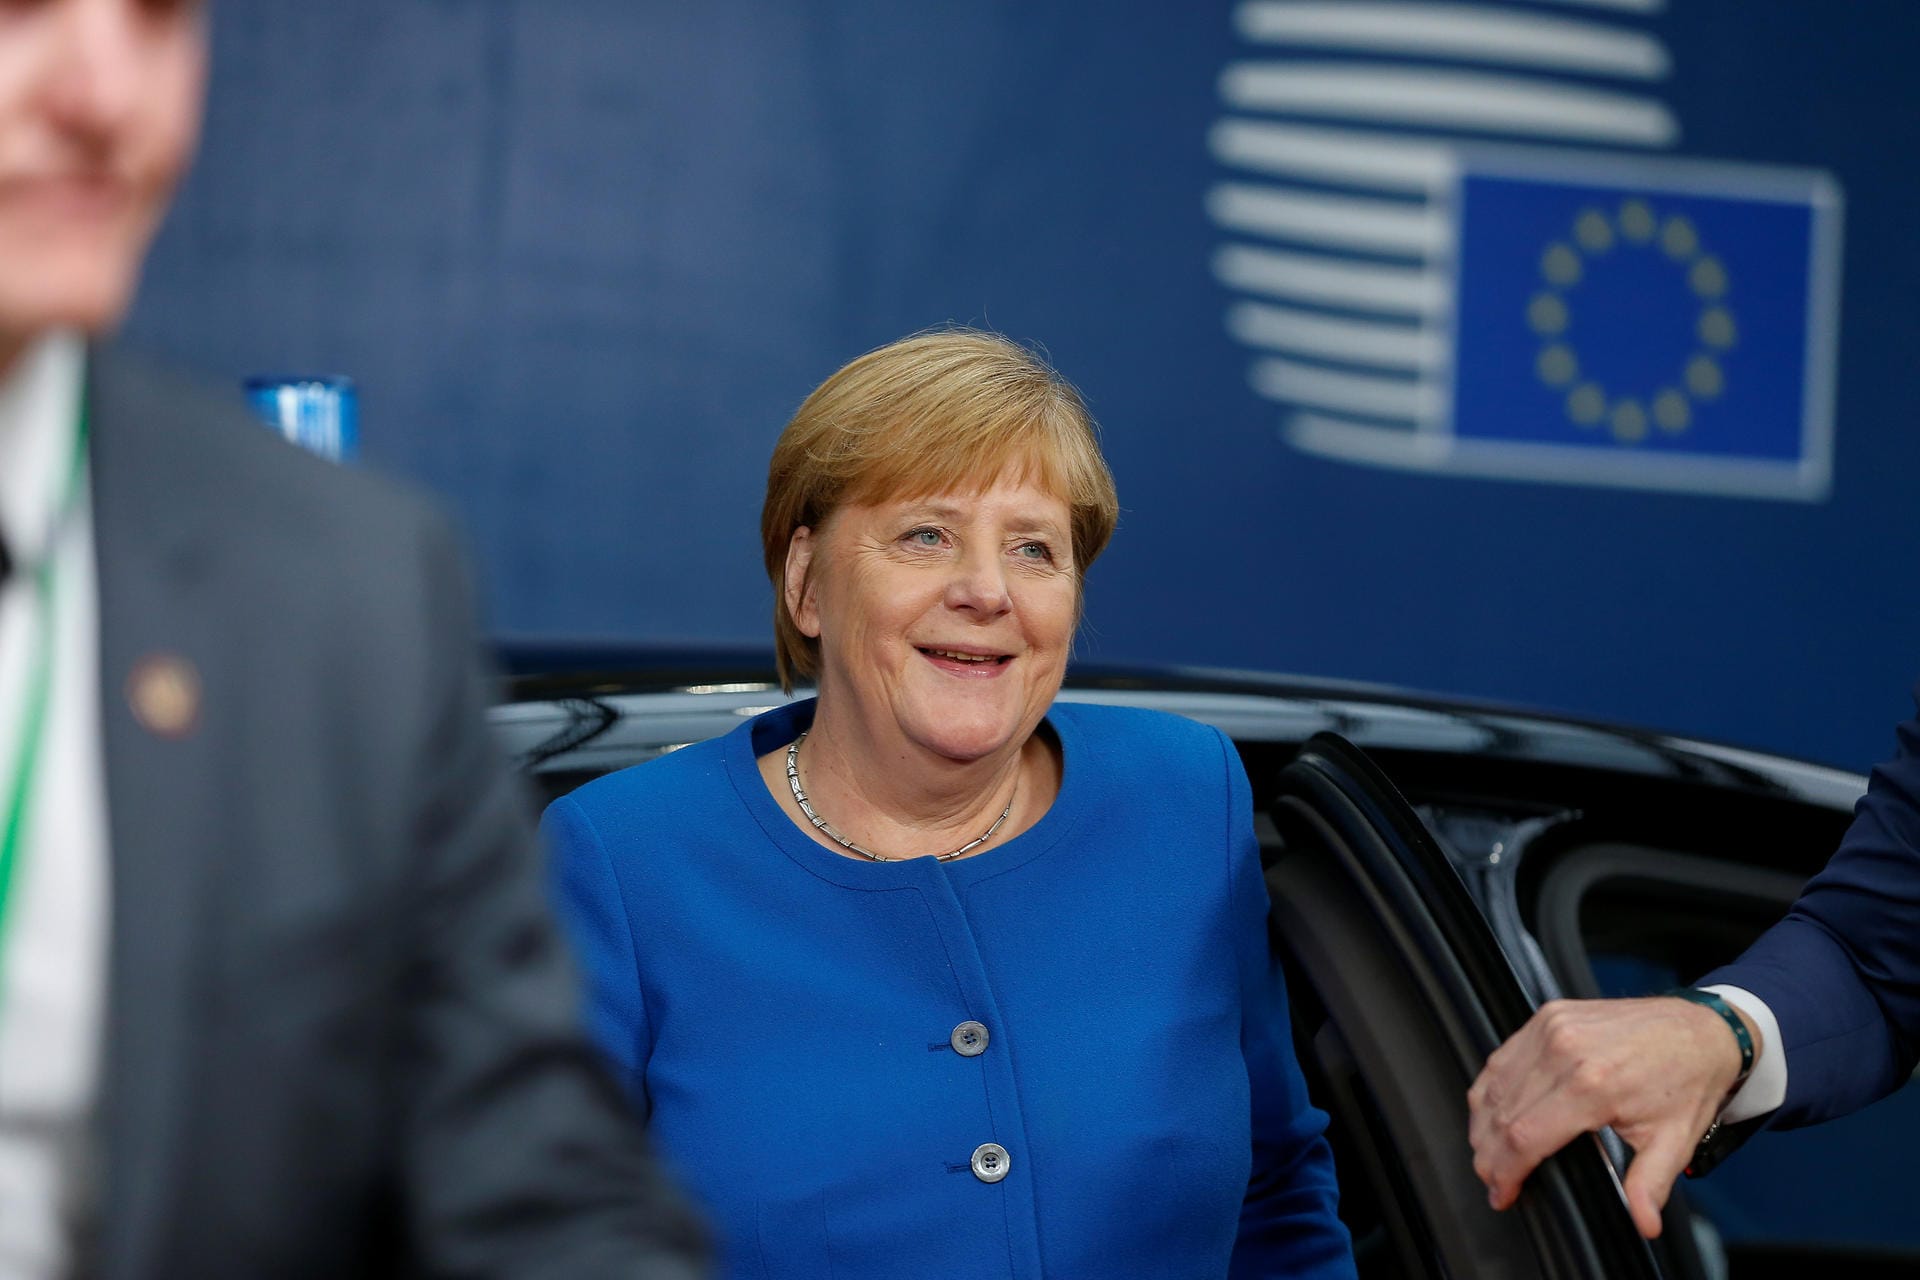 Bundeskanzlerin Angela Merkel zeigte sich ebenfalls optimistisch: "Das ist eine gute Nachricht", sagte sie vor Beginn des EU-Gipfels. Das Abkommen eröffne die Möglichkeit, die Integrität des EU-Binnenmarkts und das Karfreitagsabkommen zur Beendigung des Nordirland-Konflikts zu erhalten.